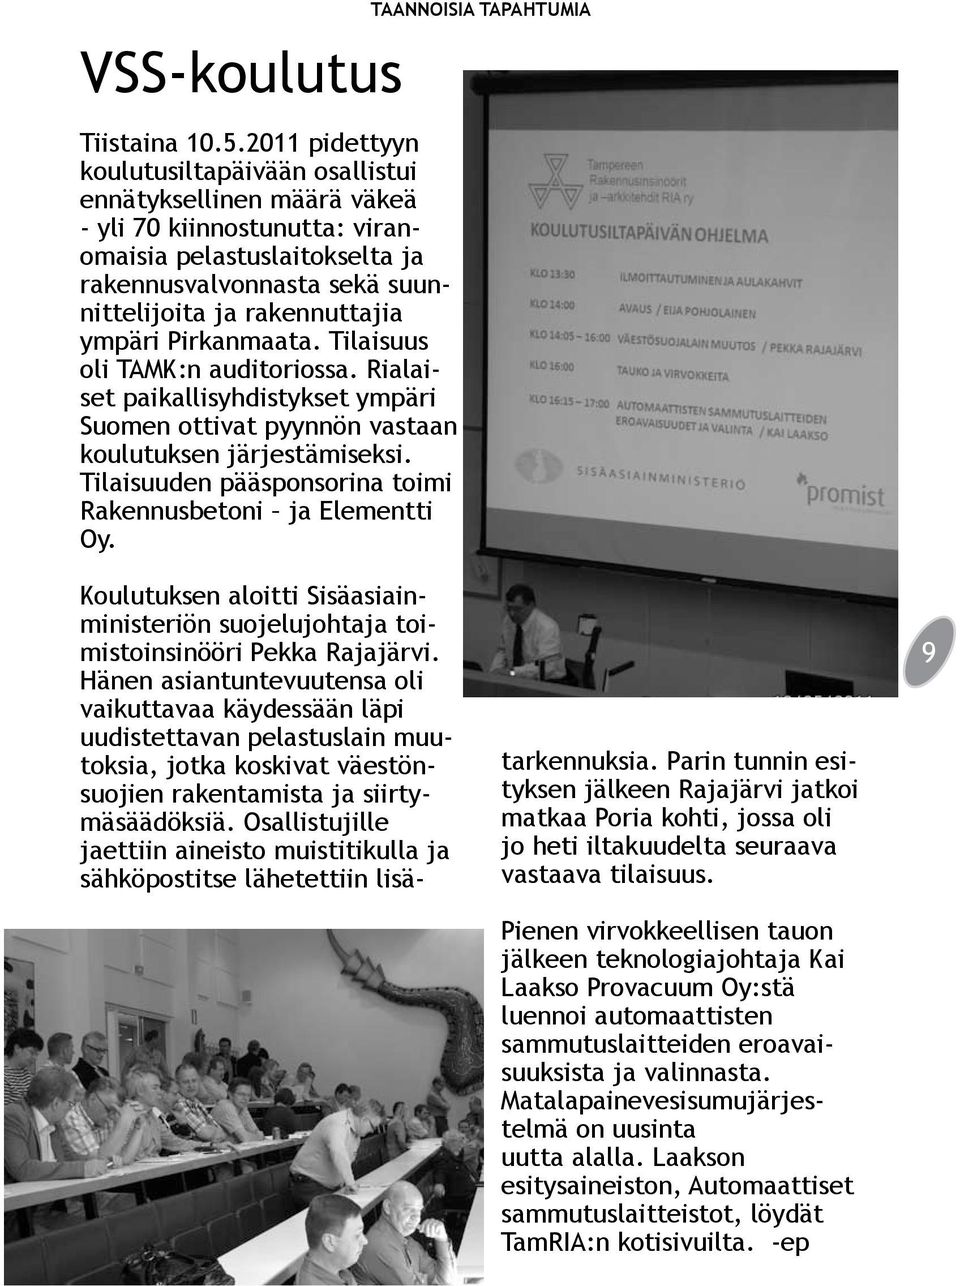 ympäri Pirkanmaata. Tilaisuus oli TAMK:n auditoriossa. Rialaiset paikallisyhdistykset ympäri Suomen ottivat pyynnön vastaan koulutuksen järjestämiseksi.